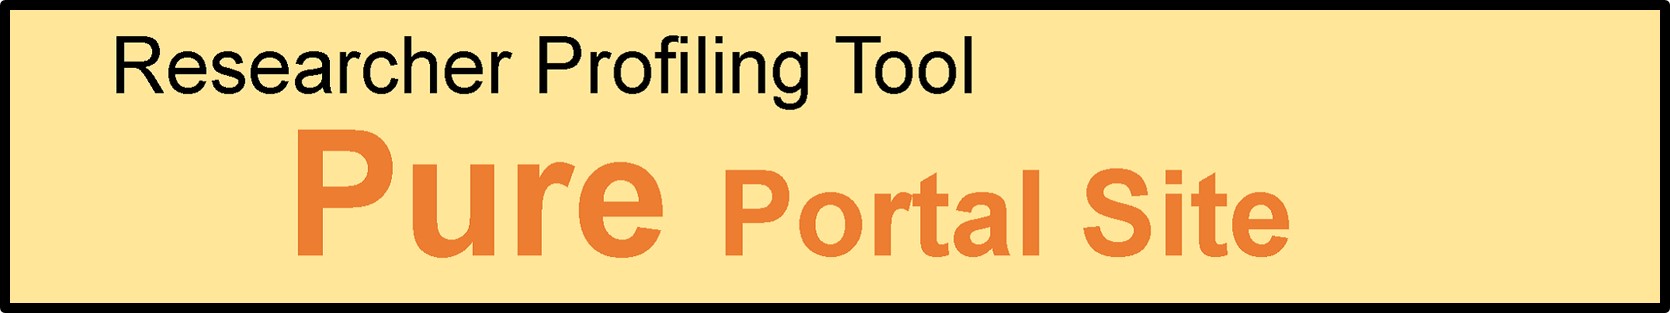 九州大学 研究者プロファイリングツール portal